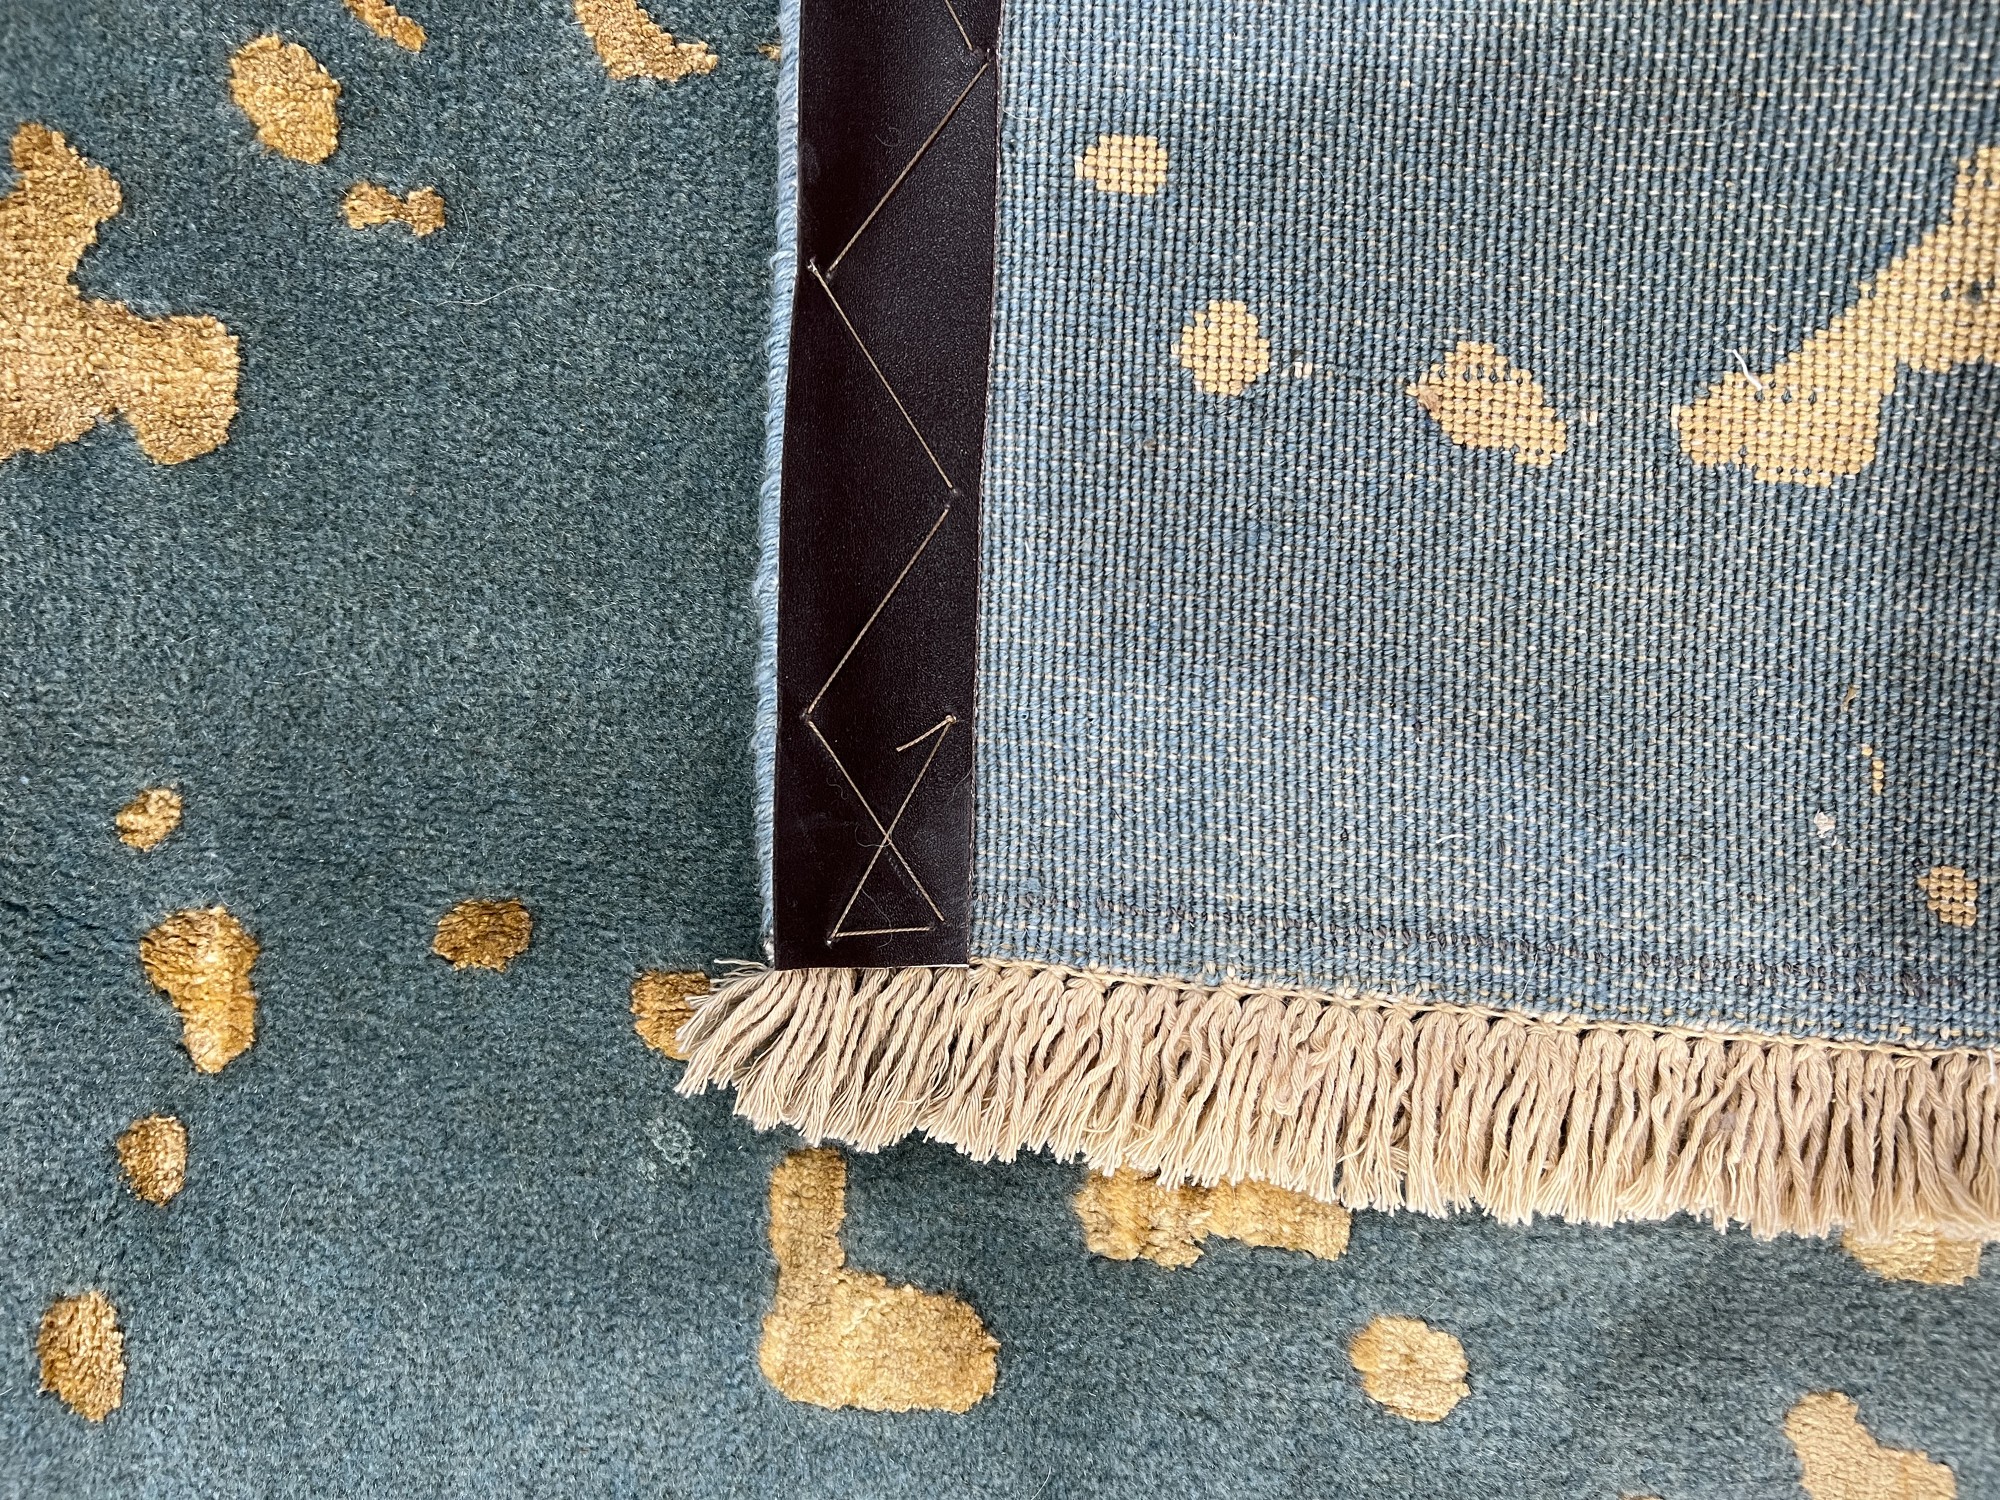 فرش پشمی ماشینی طبیعی و ارگانیک کد 0097 - زمینه آبی پر رنگ - حاشیه آبی پر رنگ